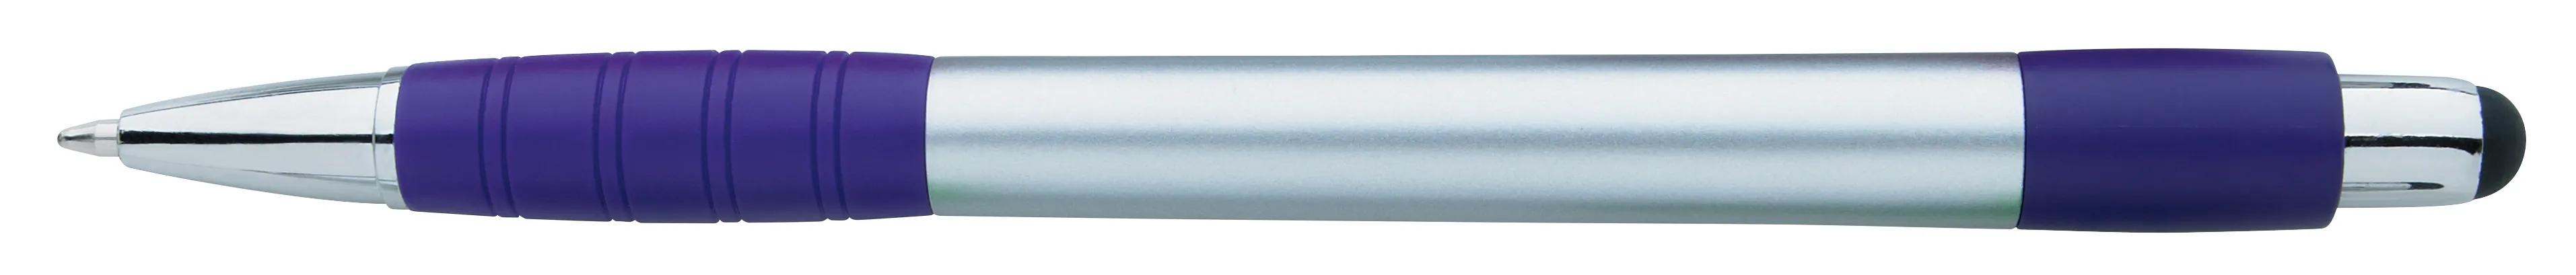 Silver Element Stylus Pen 15 of 53